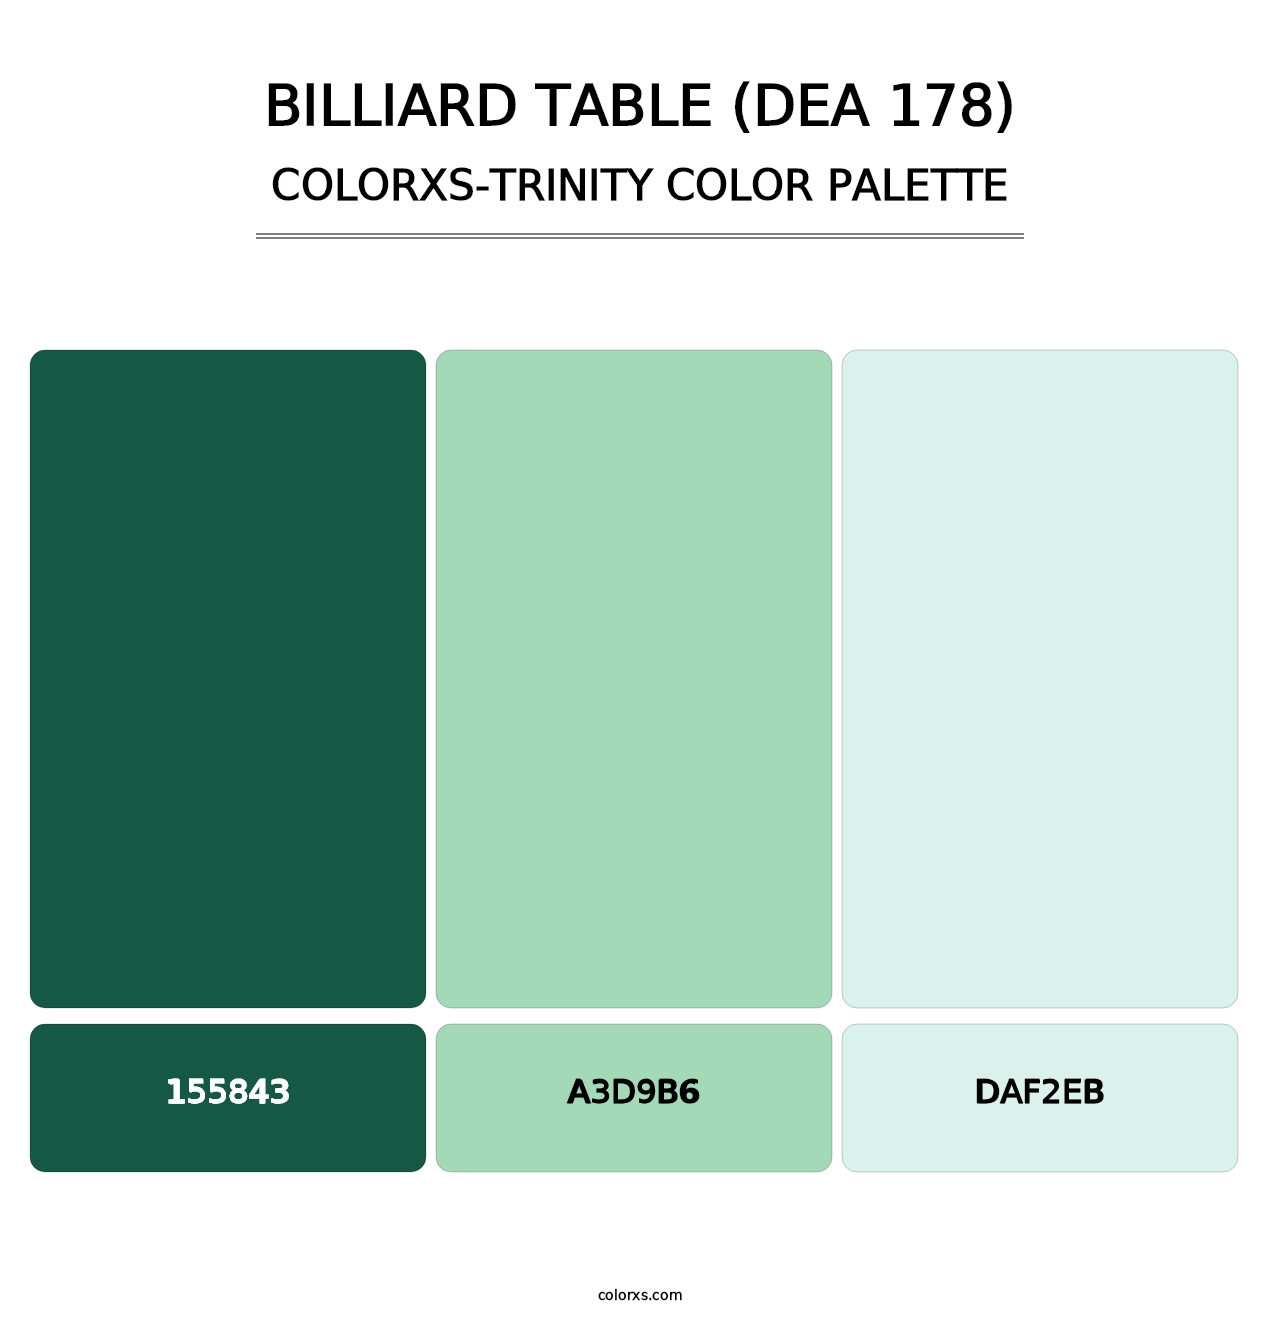 Billiard Table (DEA 178) - Colorxs Trinity Palette